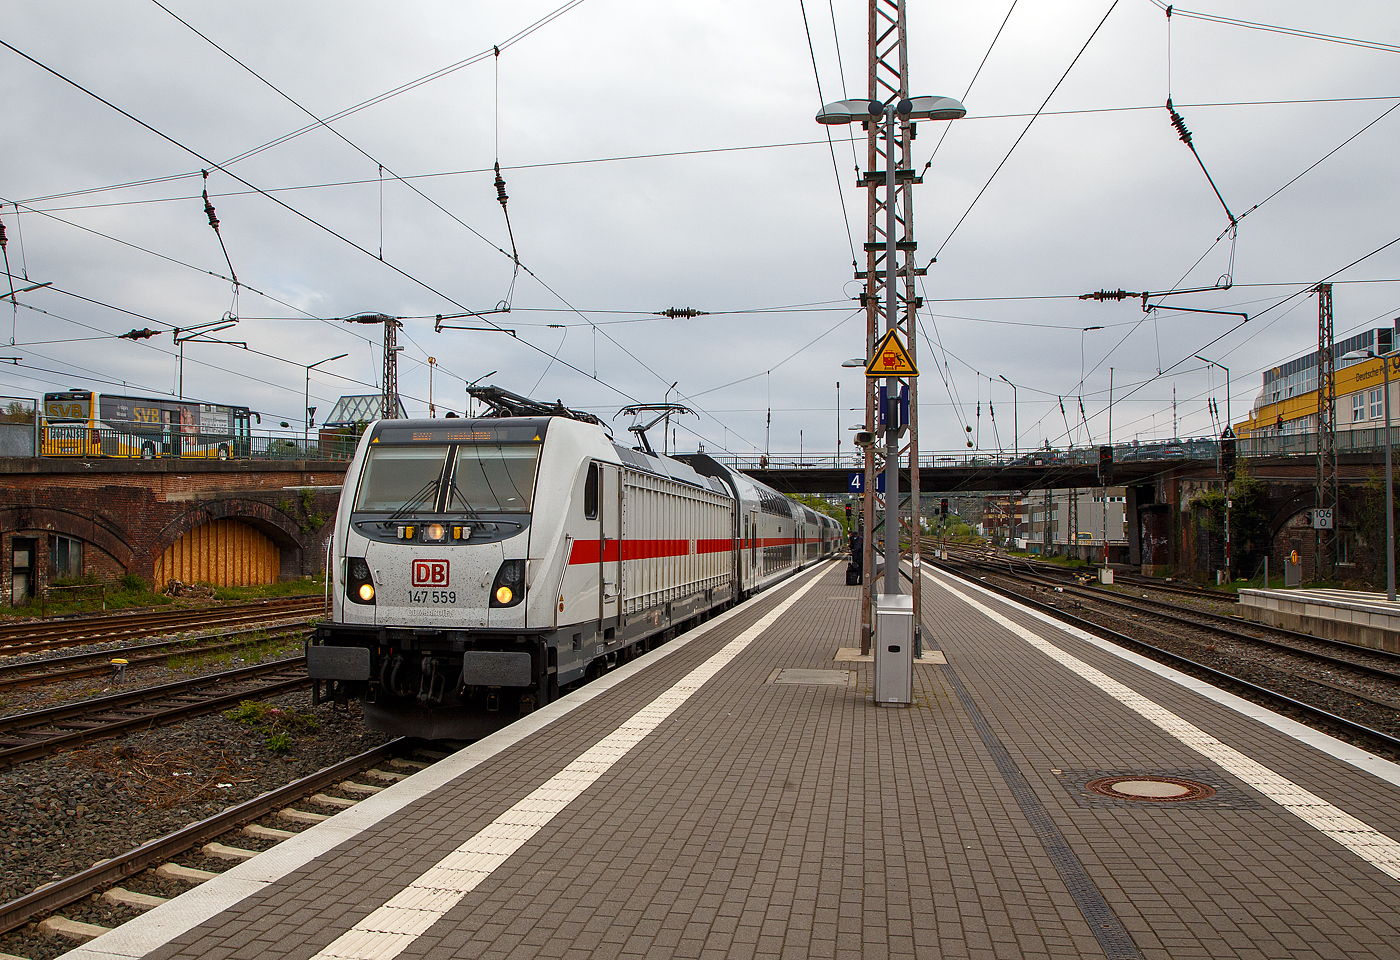 Die 147 559-9 (91 80 6147 559-9 D-DB – IC 4885) der DB Fernverkehr AG erreicht am 30.04.2022, mit dem IC 2227 (Münster Hbf - Hamm Hbf - Siegen Hbf - Frankfurt(Main)Hbf), den Hauptbahnhof Siegen. Hier im Hbf Siegen macht der Zug Kopf, d.h. er wechselt die Fahrtrichtung und fährt gleich Steuerwagenvorraus Richtung Frankfurt weiter. 

Die TRAXX P160 AC3 wurde 2018 von Bombardier in Kassel unter der Fabriknummer KAS 35477 gebaut und an die DB Fernverkehr AG geliefert. Sie hat die Zulassungen für Deutschland. Für die Schweiz ist die Zulassung auch vorgesehen, daher hat sie auch vier Stromabnehmer, doch wurde noch keine Zulassung durch die Schweiz vom Hersteller erlangt. Ob sie diese mal erlangt?
